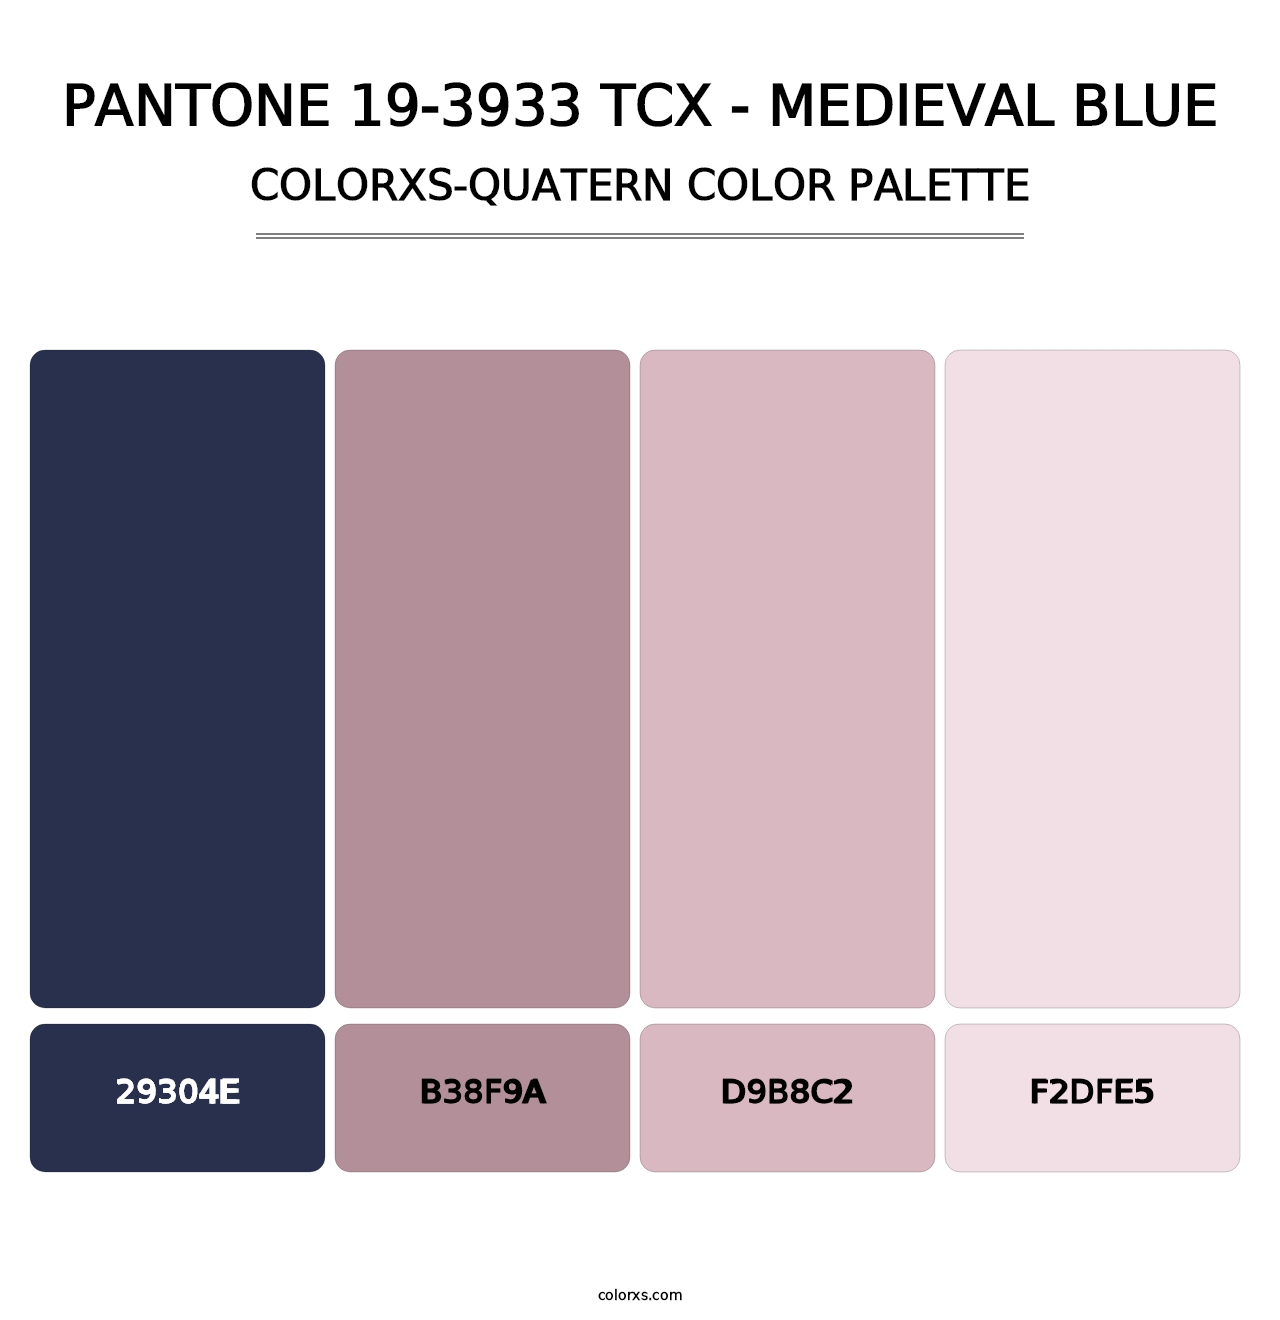 PANTONE 19-3933 TCX - Medieval Blue - Colorxs Quatern Palette